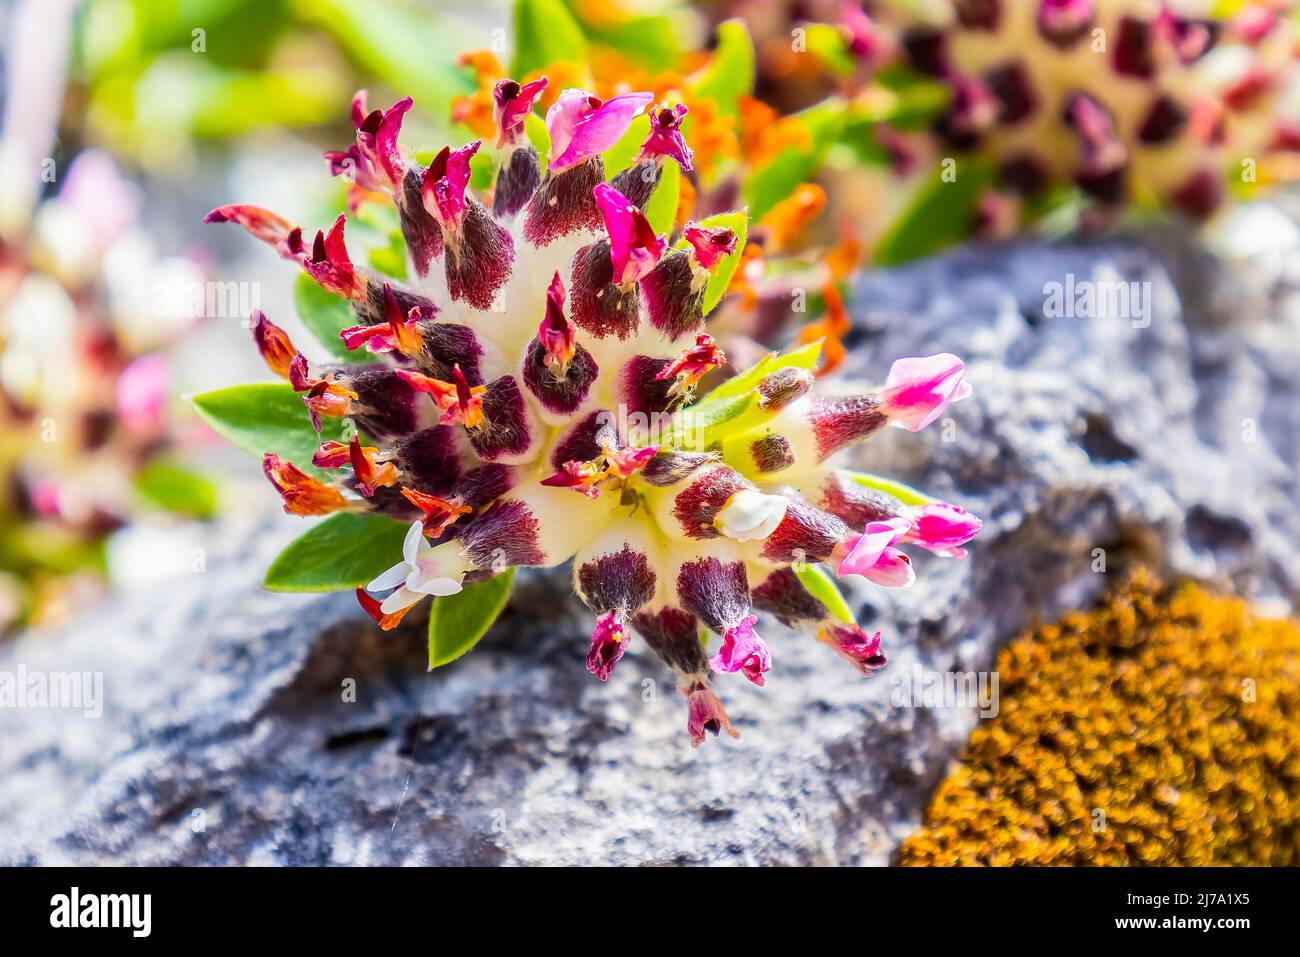 Anthyllis Vulneraria, der gemeinsame Nierendvetch, Nierendvetch oder Wundwort, ist eine Heilpflanze, die in Europa beheimatet ist. Der Name „Vulneraria“ bedeutet „Wundheilung“ Stockfoto